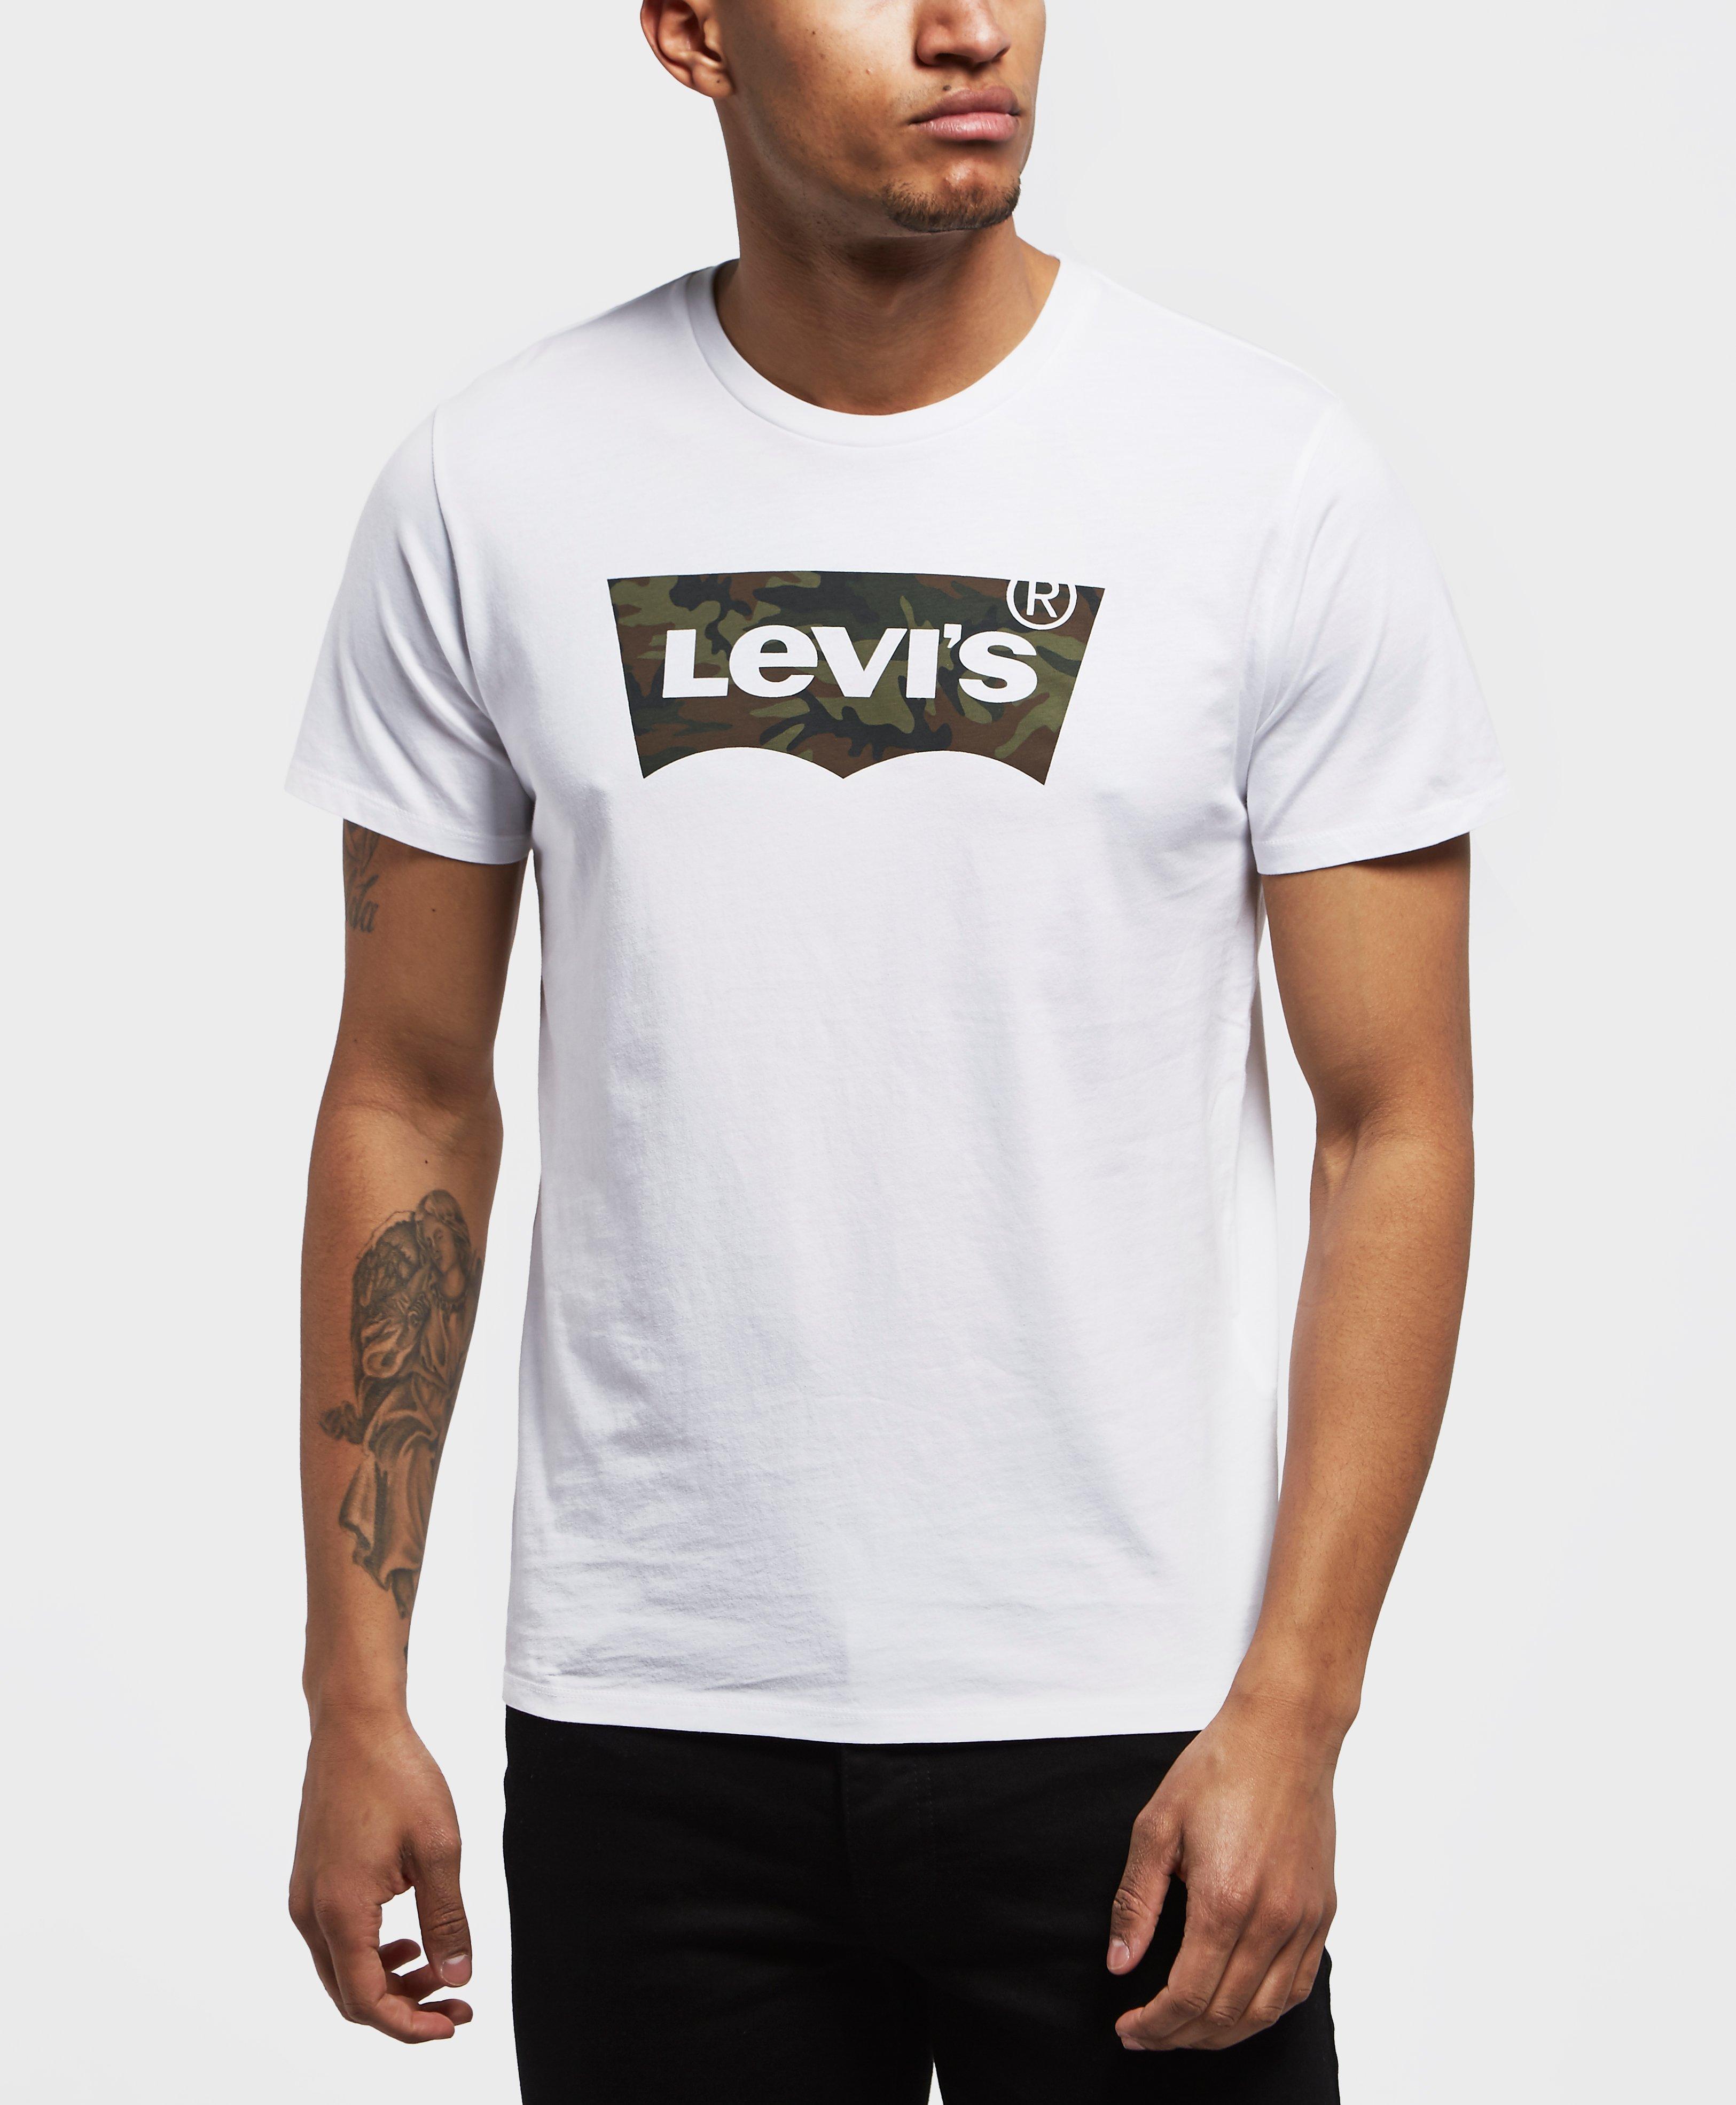 levi's camo shirt